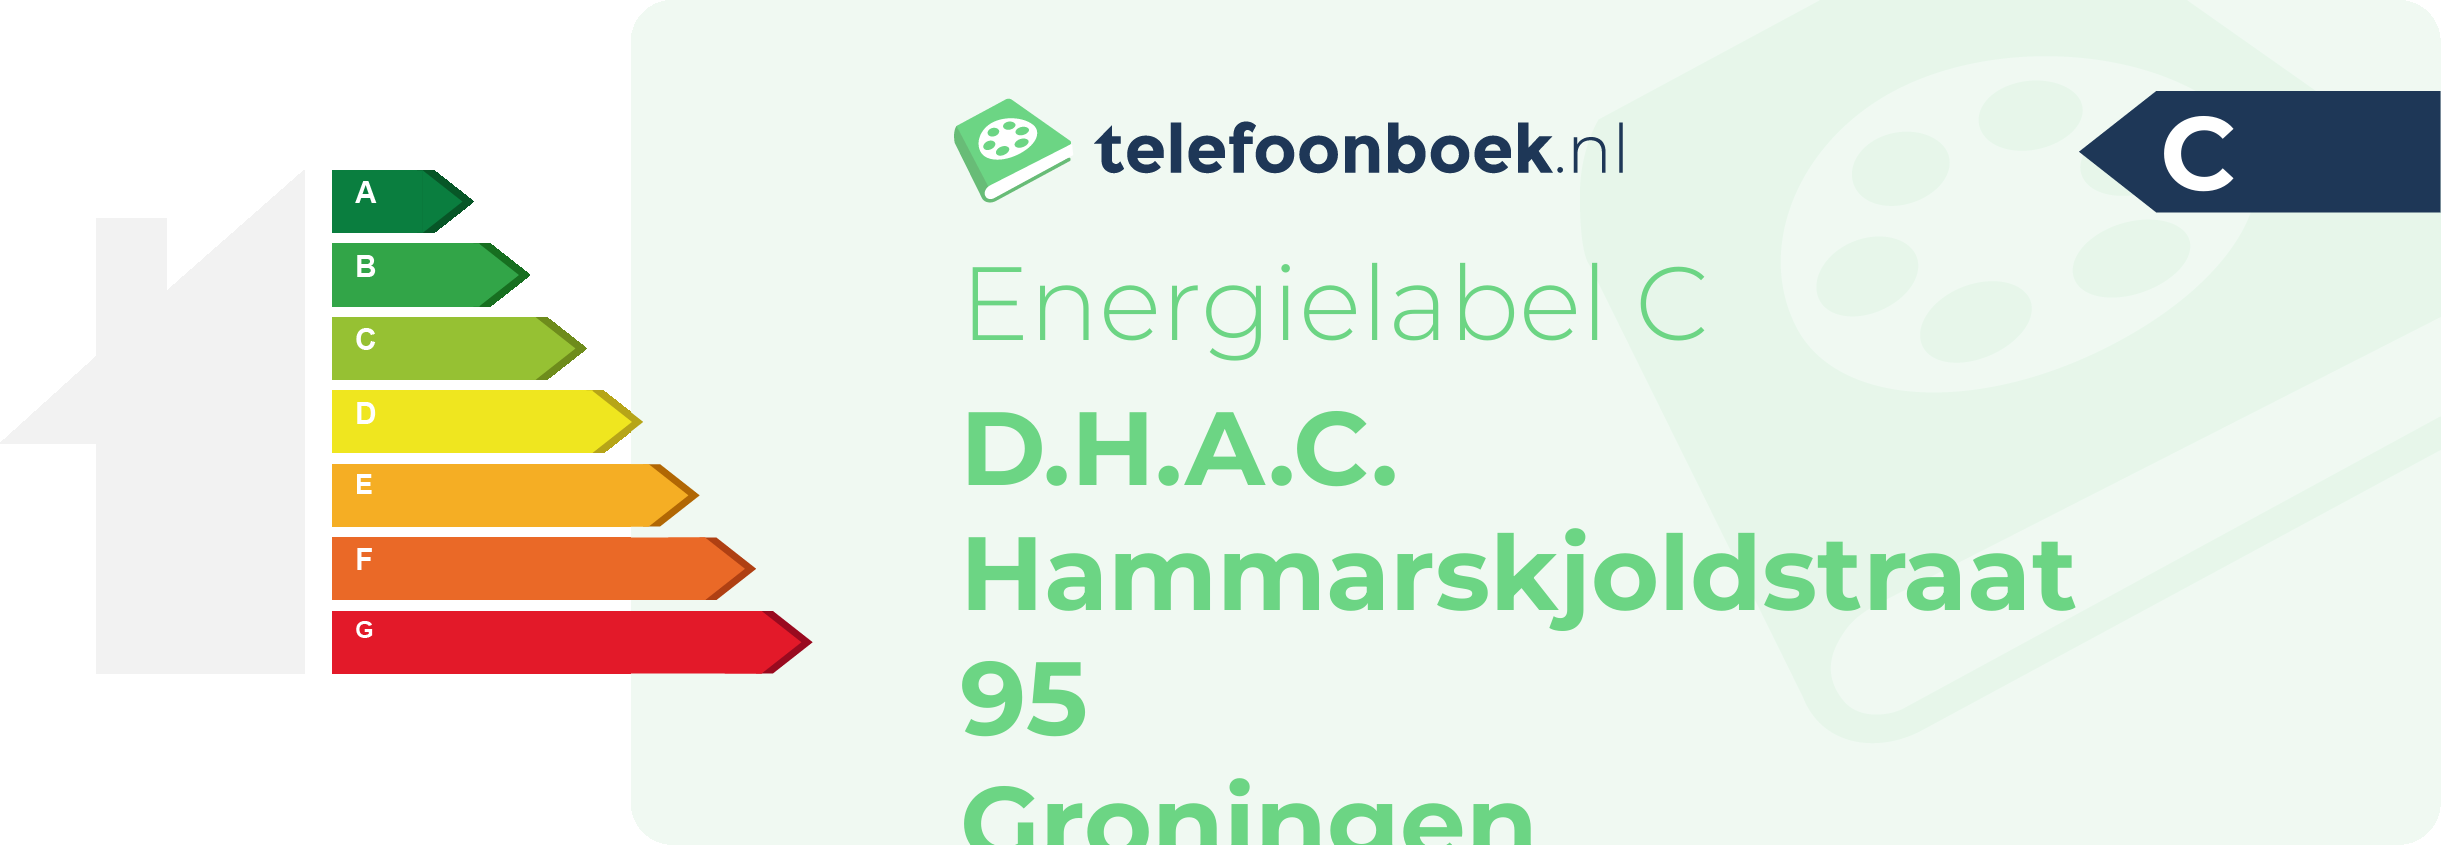 Energielabel D.H.A.C. Hammarskjoldstraat 95 Groningen